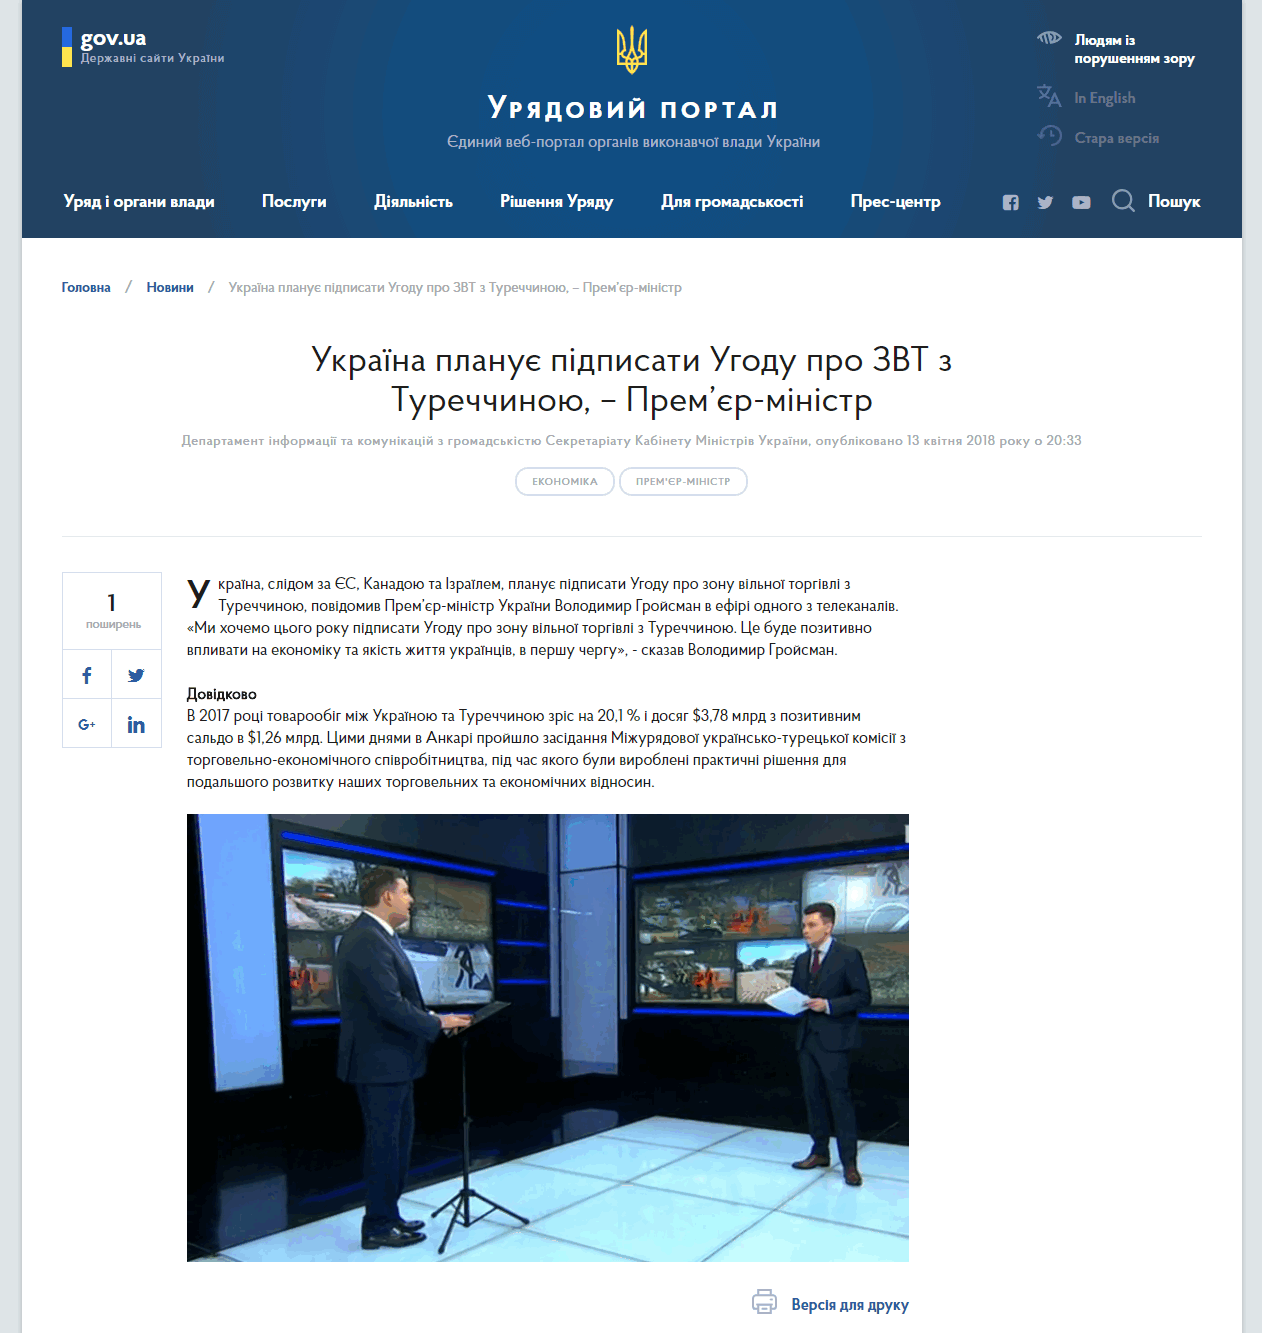 https://www.kmu.gov.ua/ua/news/ukrayina-planuye-pidpisati-ugodu-pro-zvt-s-turechchinoyu-premyer-ministr